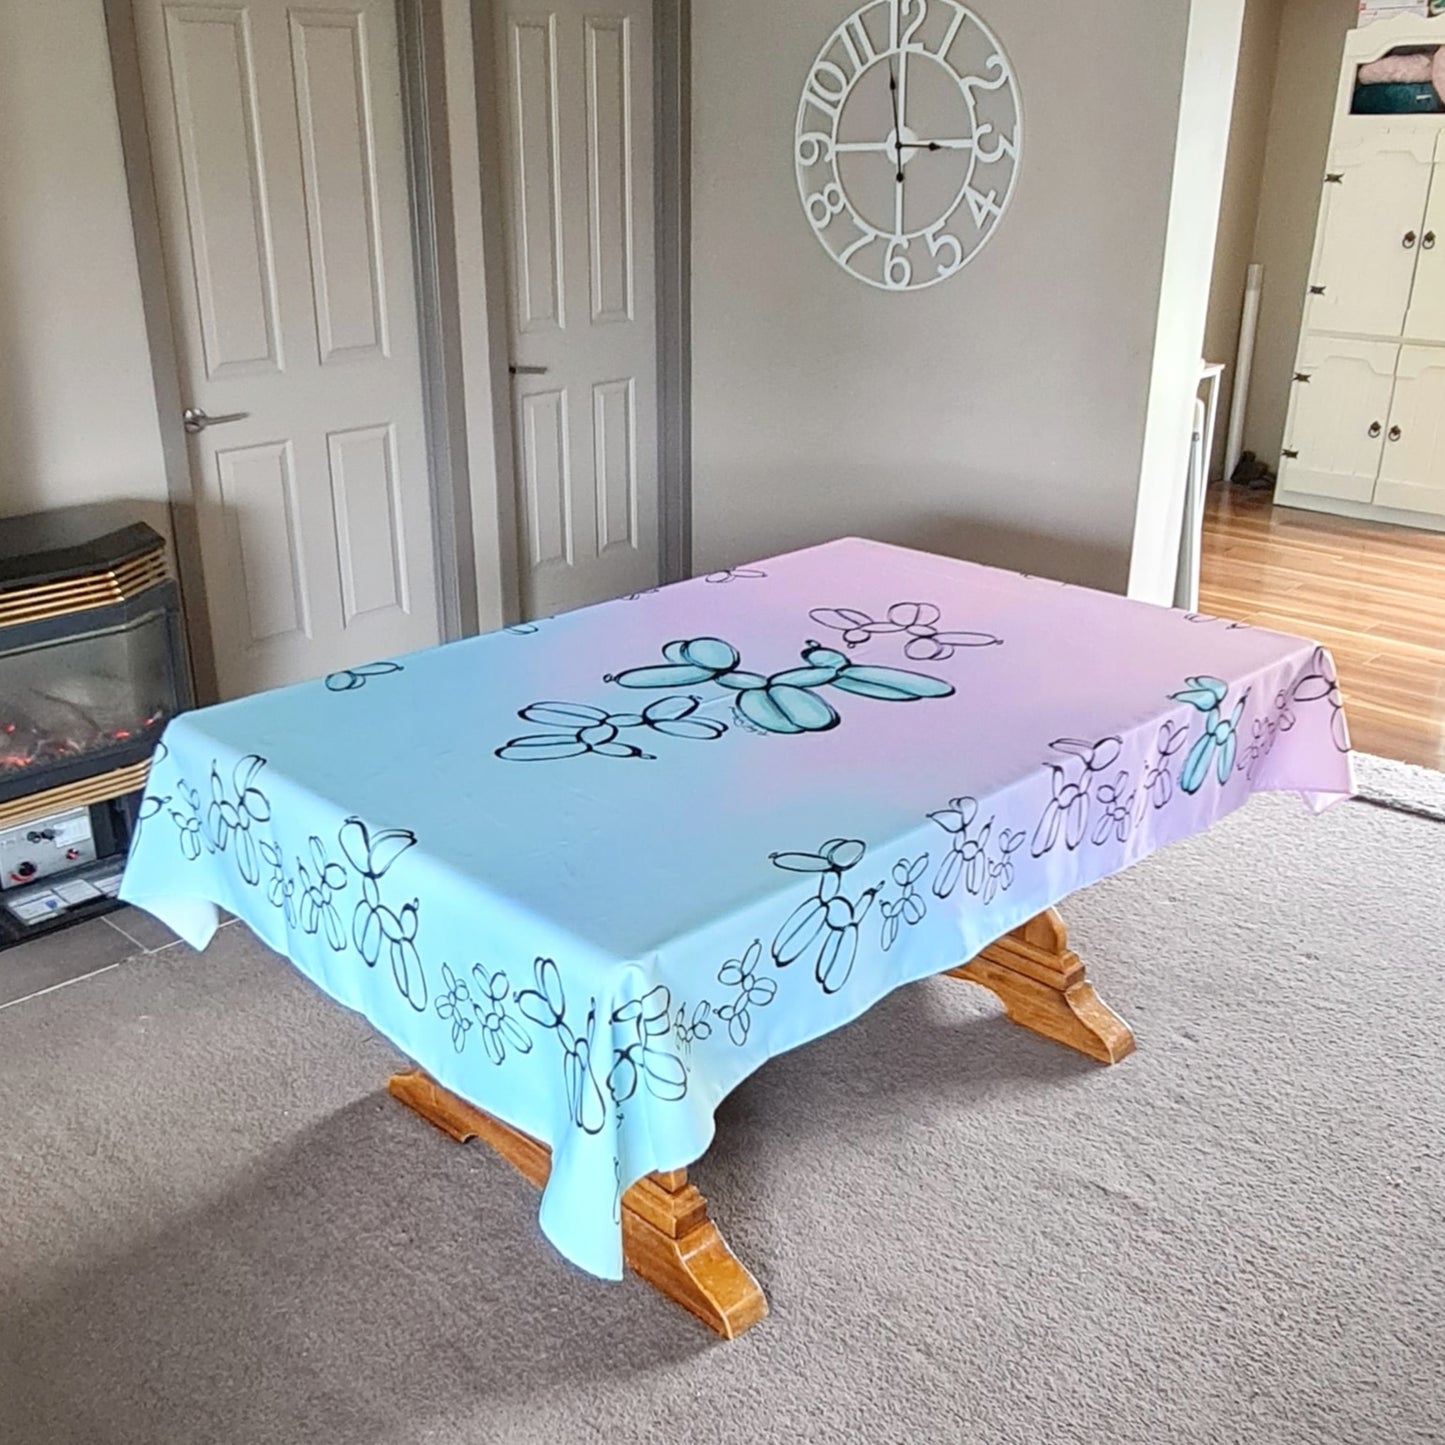 Fairy Floss - Tablecloth 84" x 60" or 213cm x 152cm